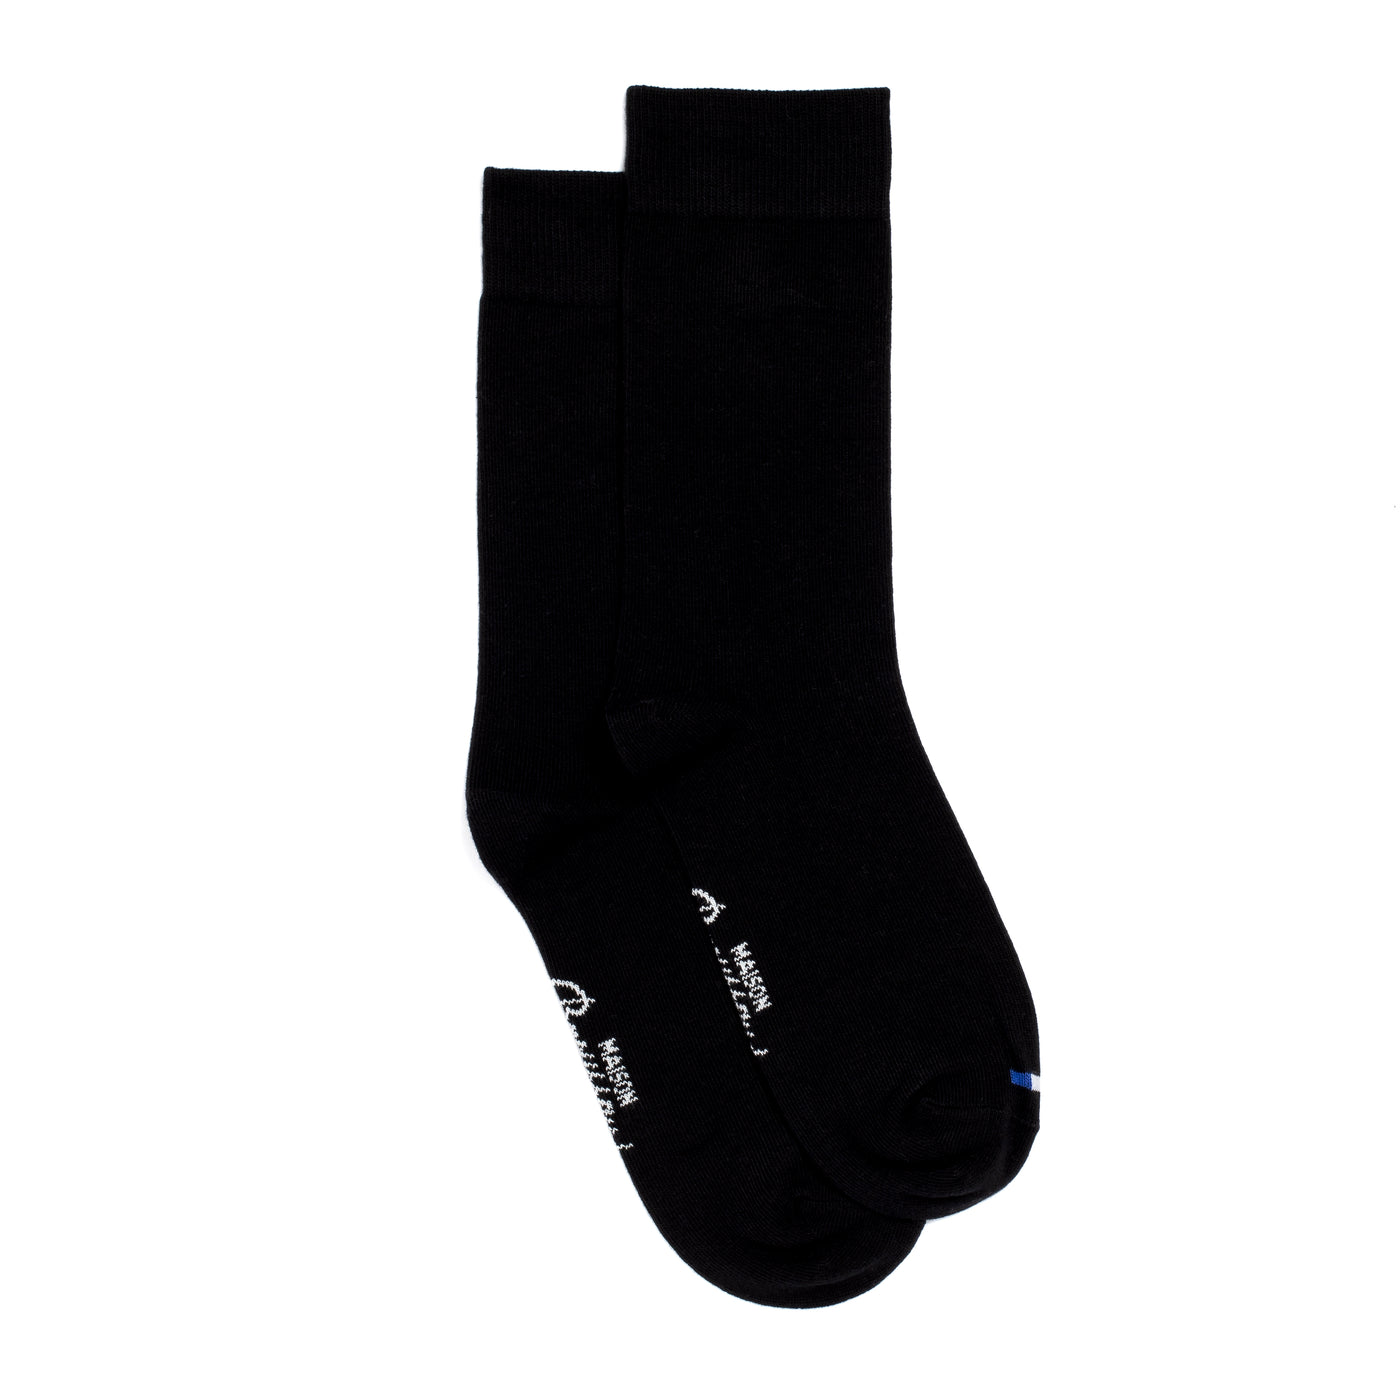 Plain black socks